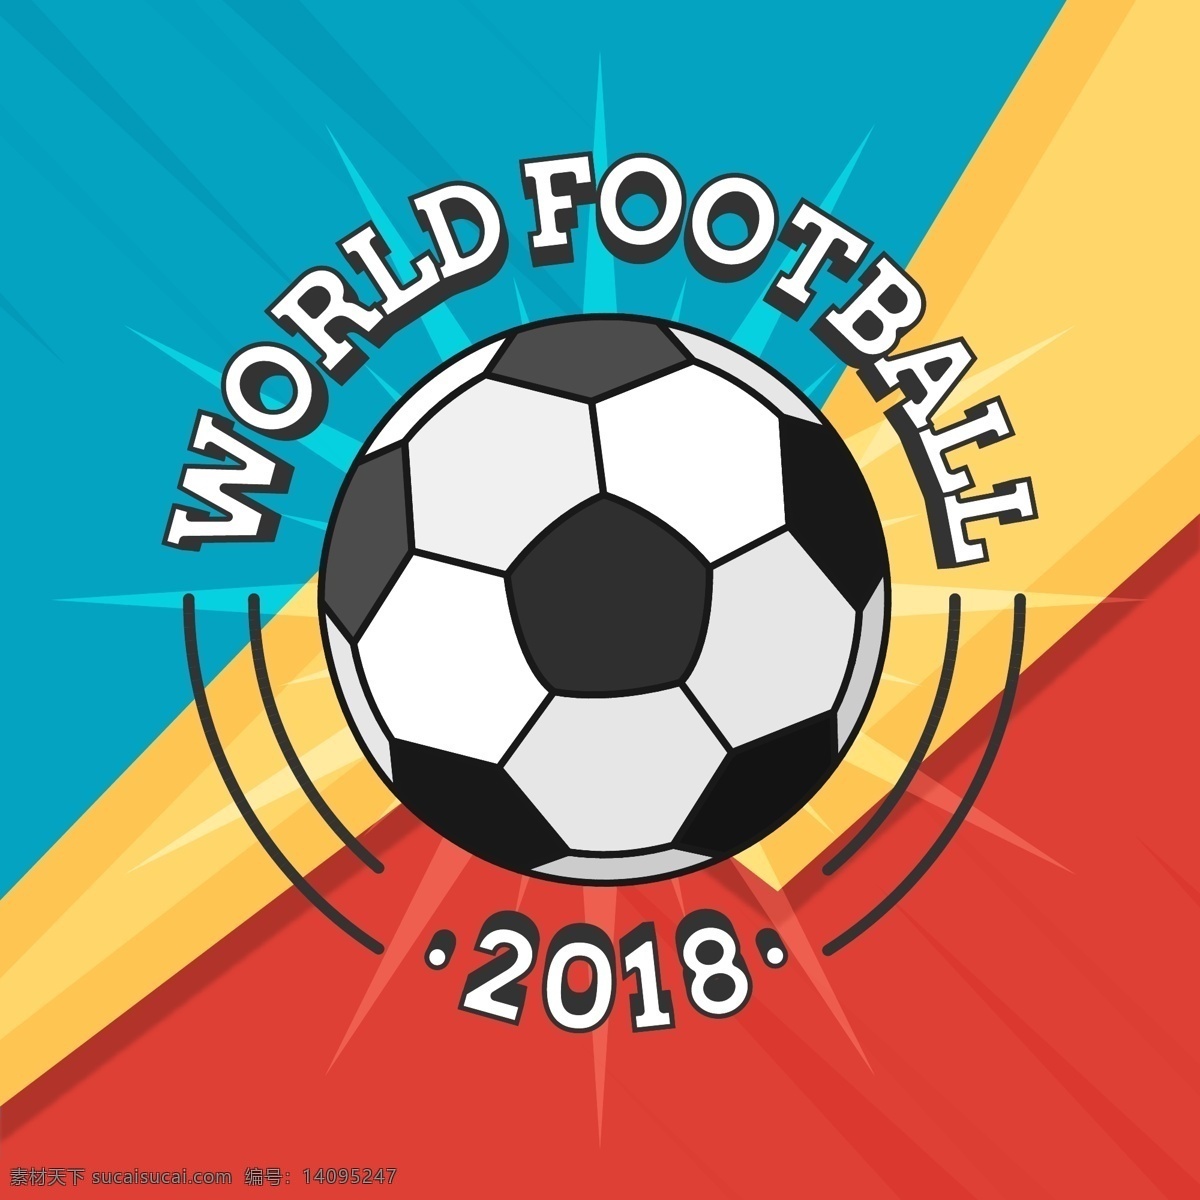 2018 世界杯 足球赛 背景 卡通 体育 矢量素材 足球 欧洲杯 比赛 竞赛 俄罗斯